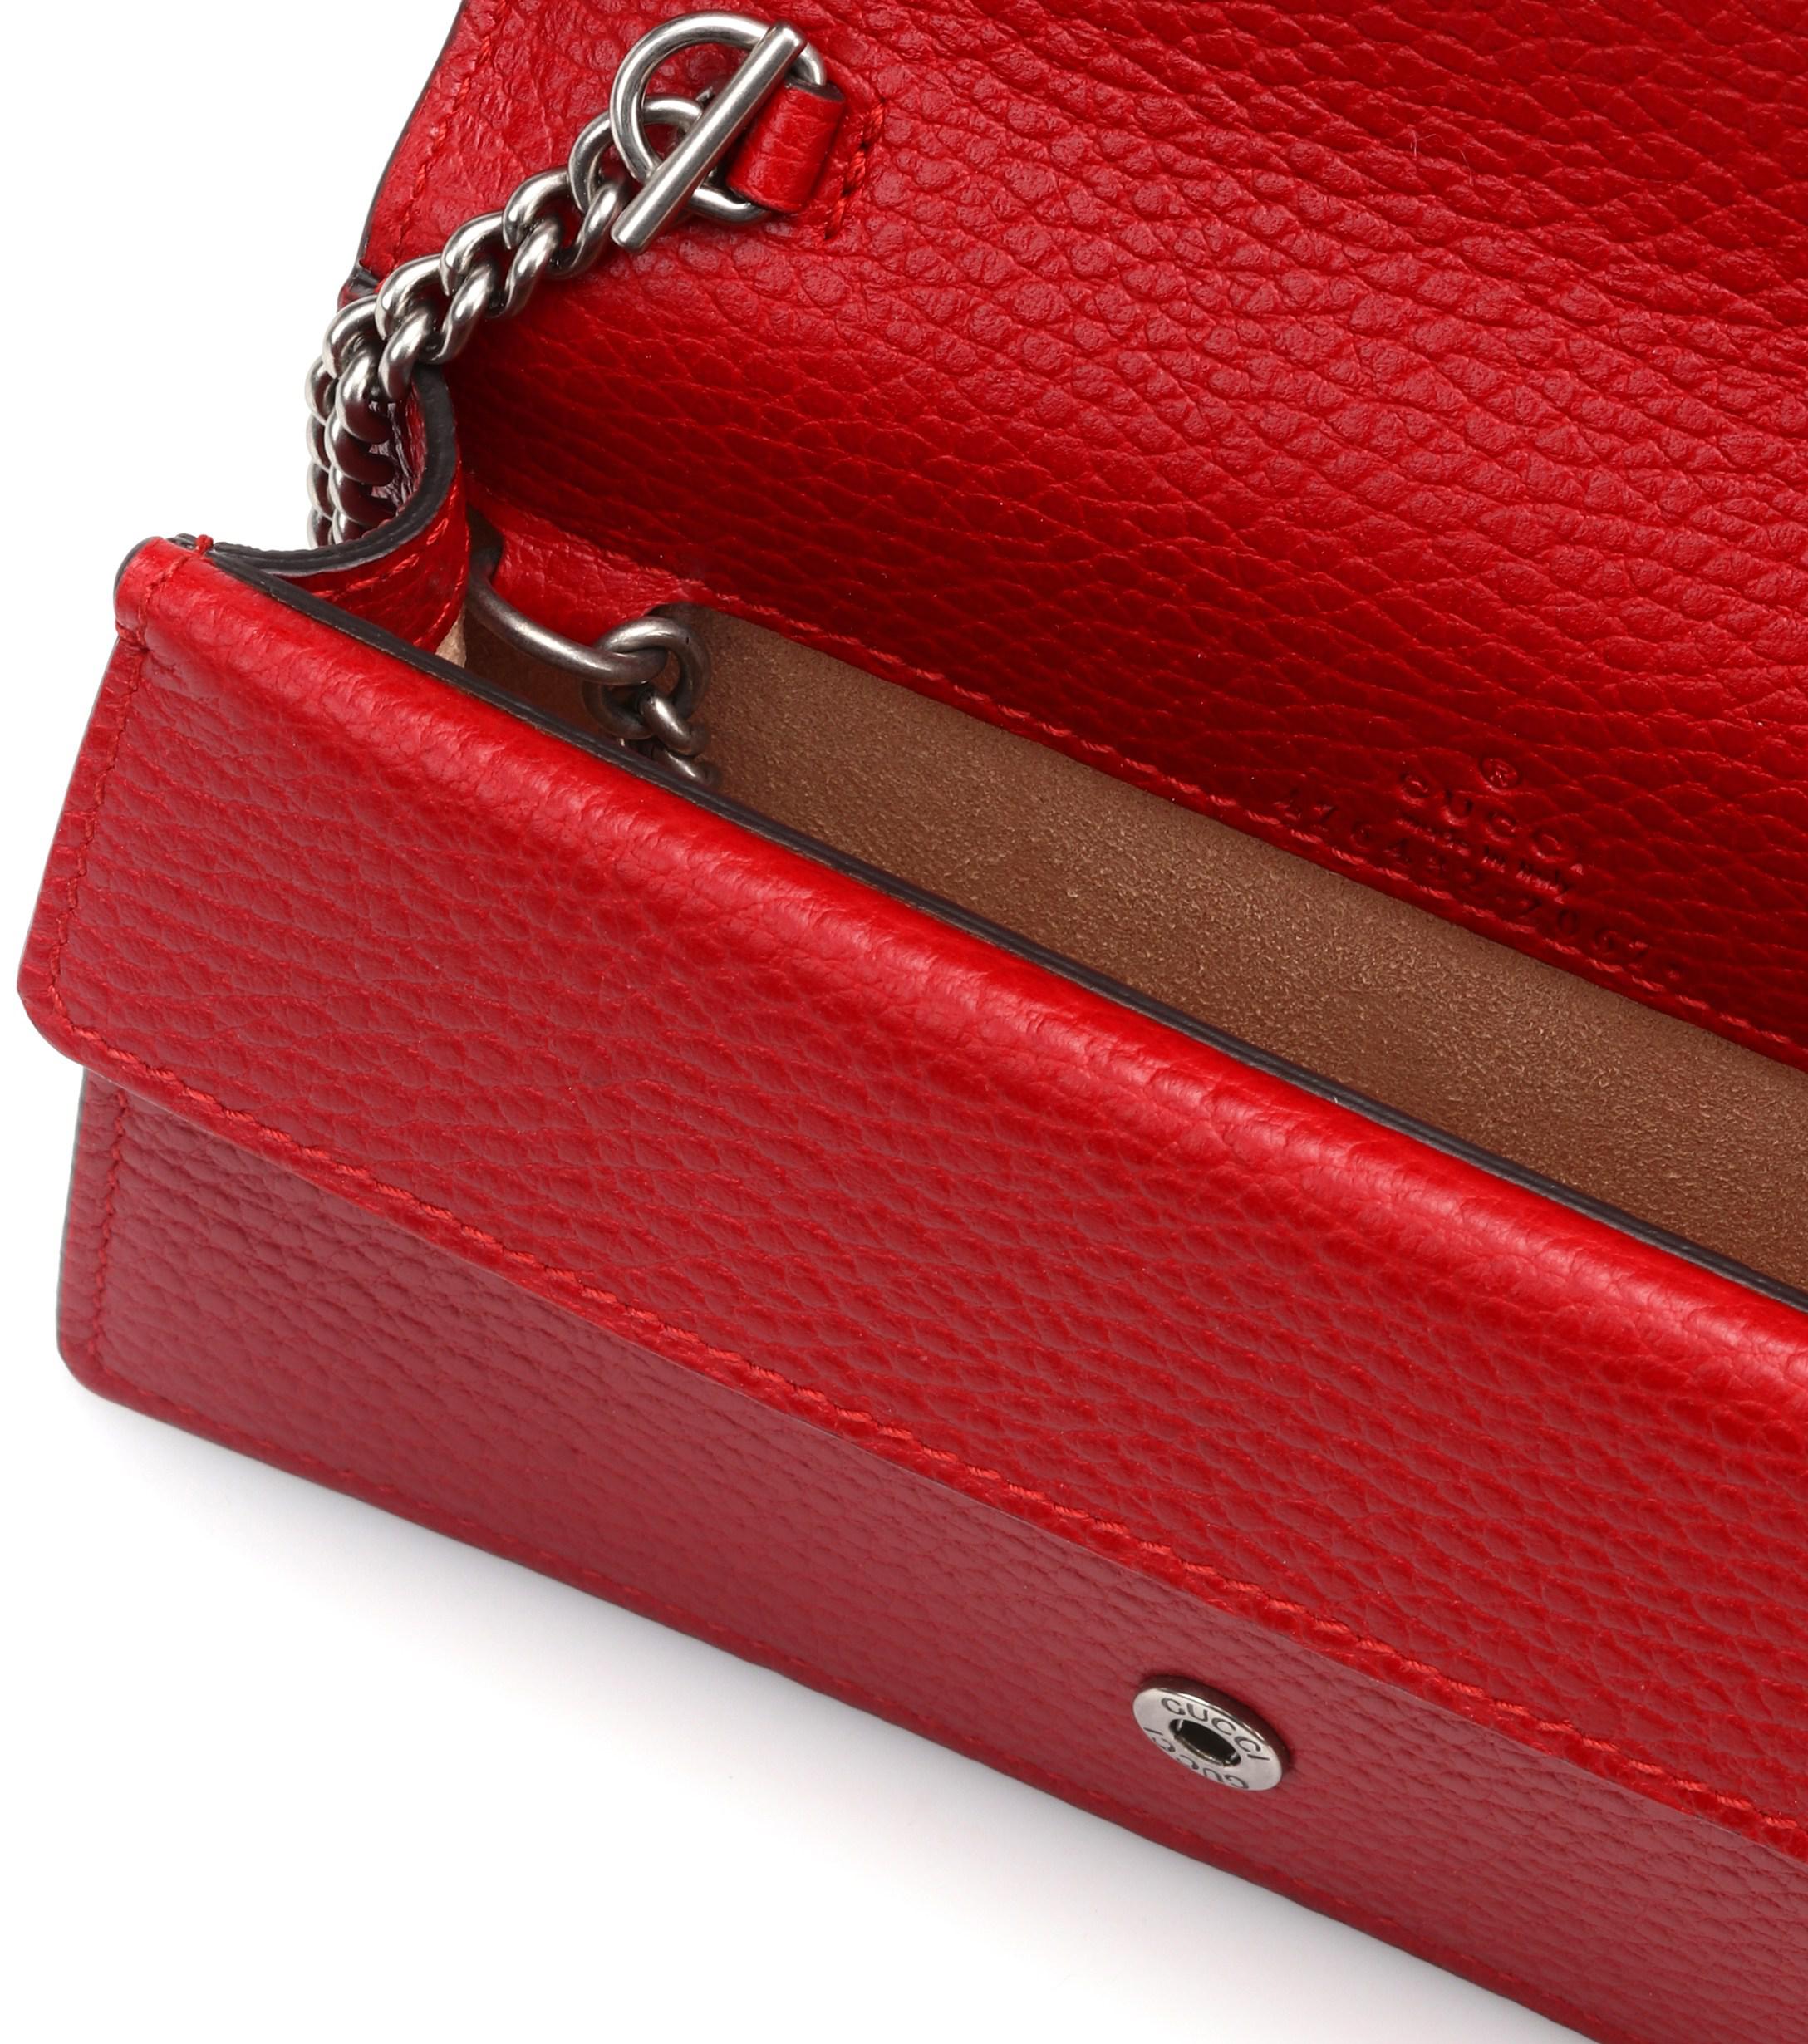 Gucci Dionysus Super Mini Shoulder Bag in Red - Lyst